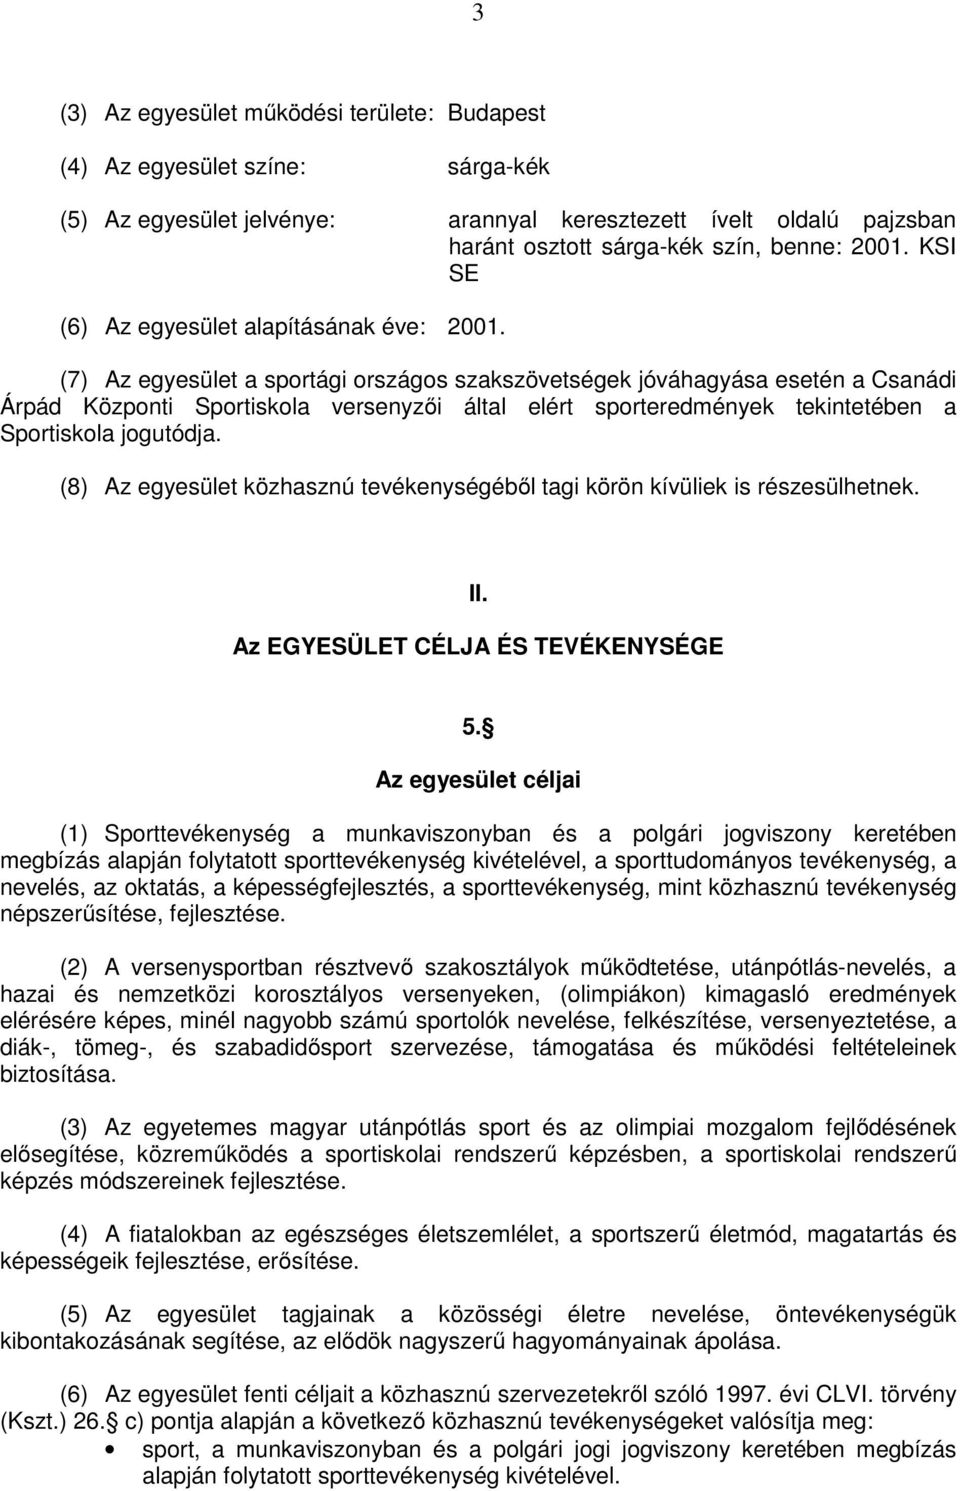 (7) Az egyesület a sportági országos szakszövetségek jóváhagyása esetén a Csanádi Árpád Központi Sportiskola versenyzői által elért sporteredmények tekintetében a Sportiskola jogutódja.